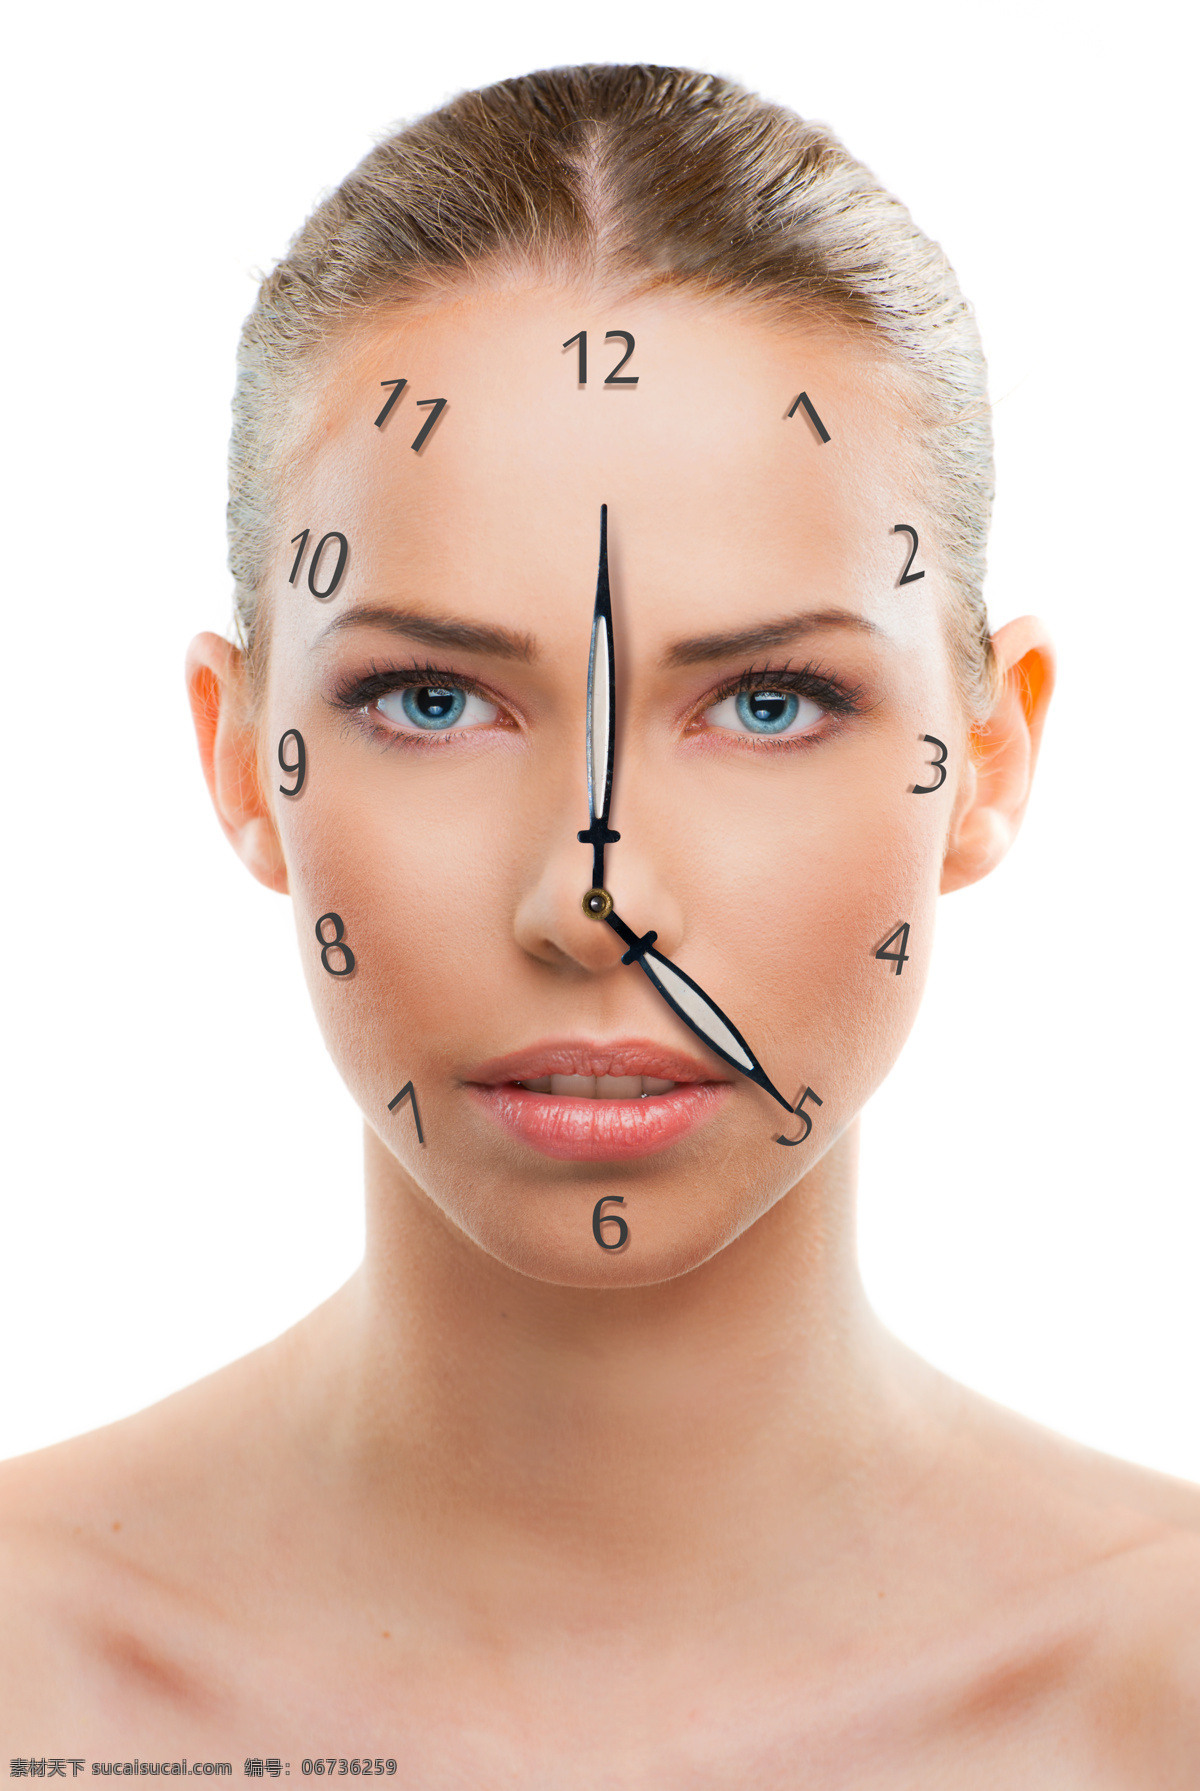 美女 脸上 时间 女性 年轻 皮肤 肌肤 干裂 修复 老化 人体 对比 其他人物 人物图片